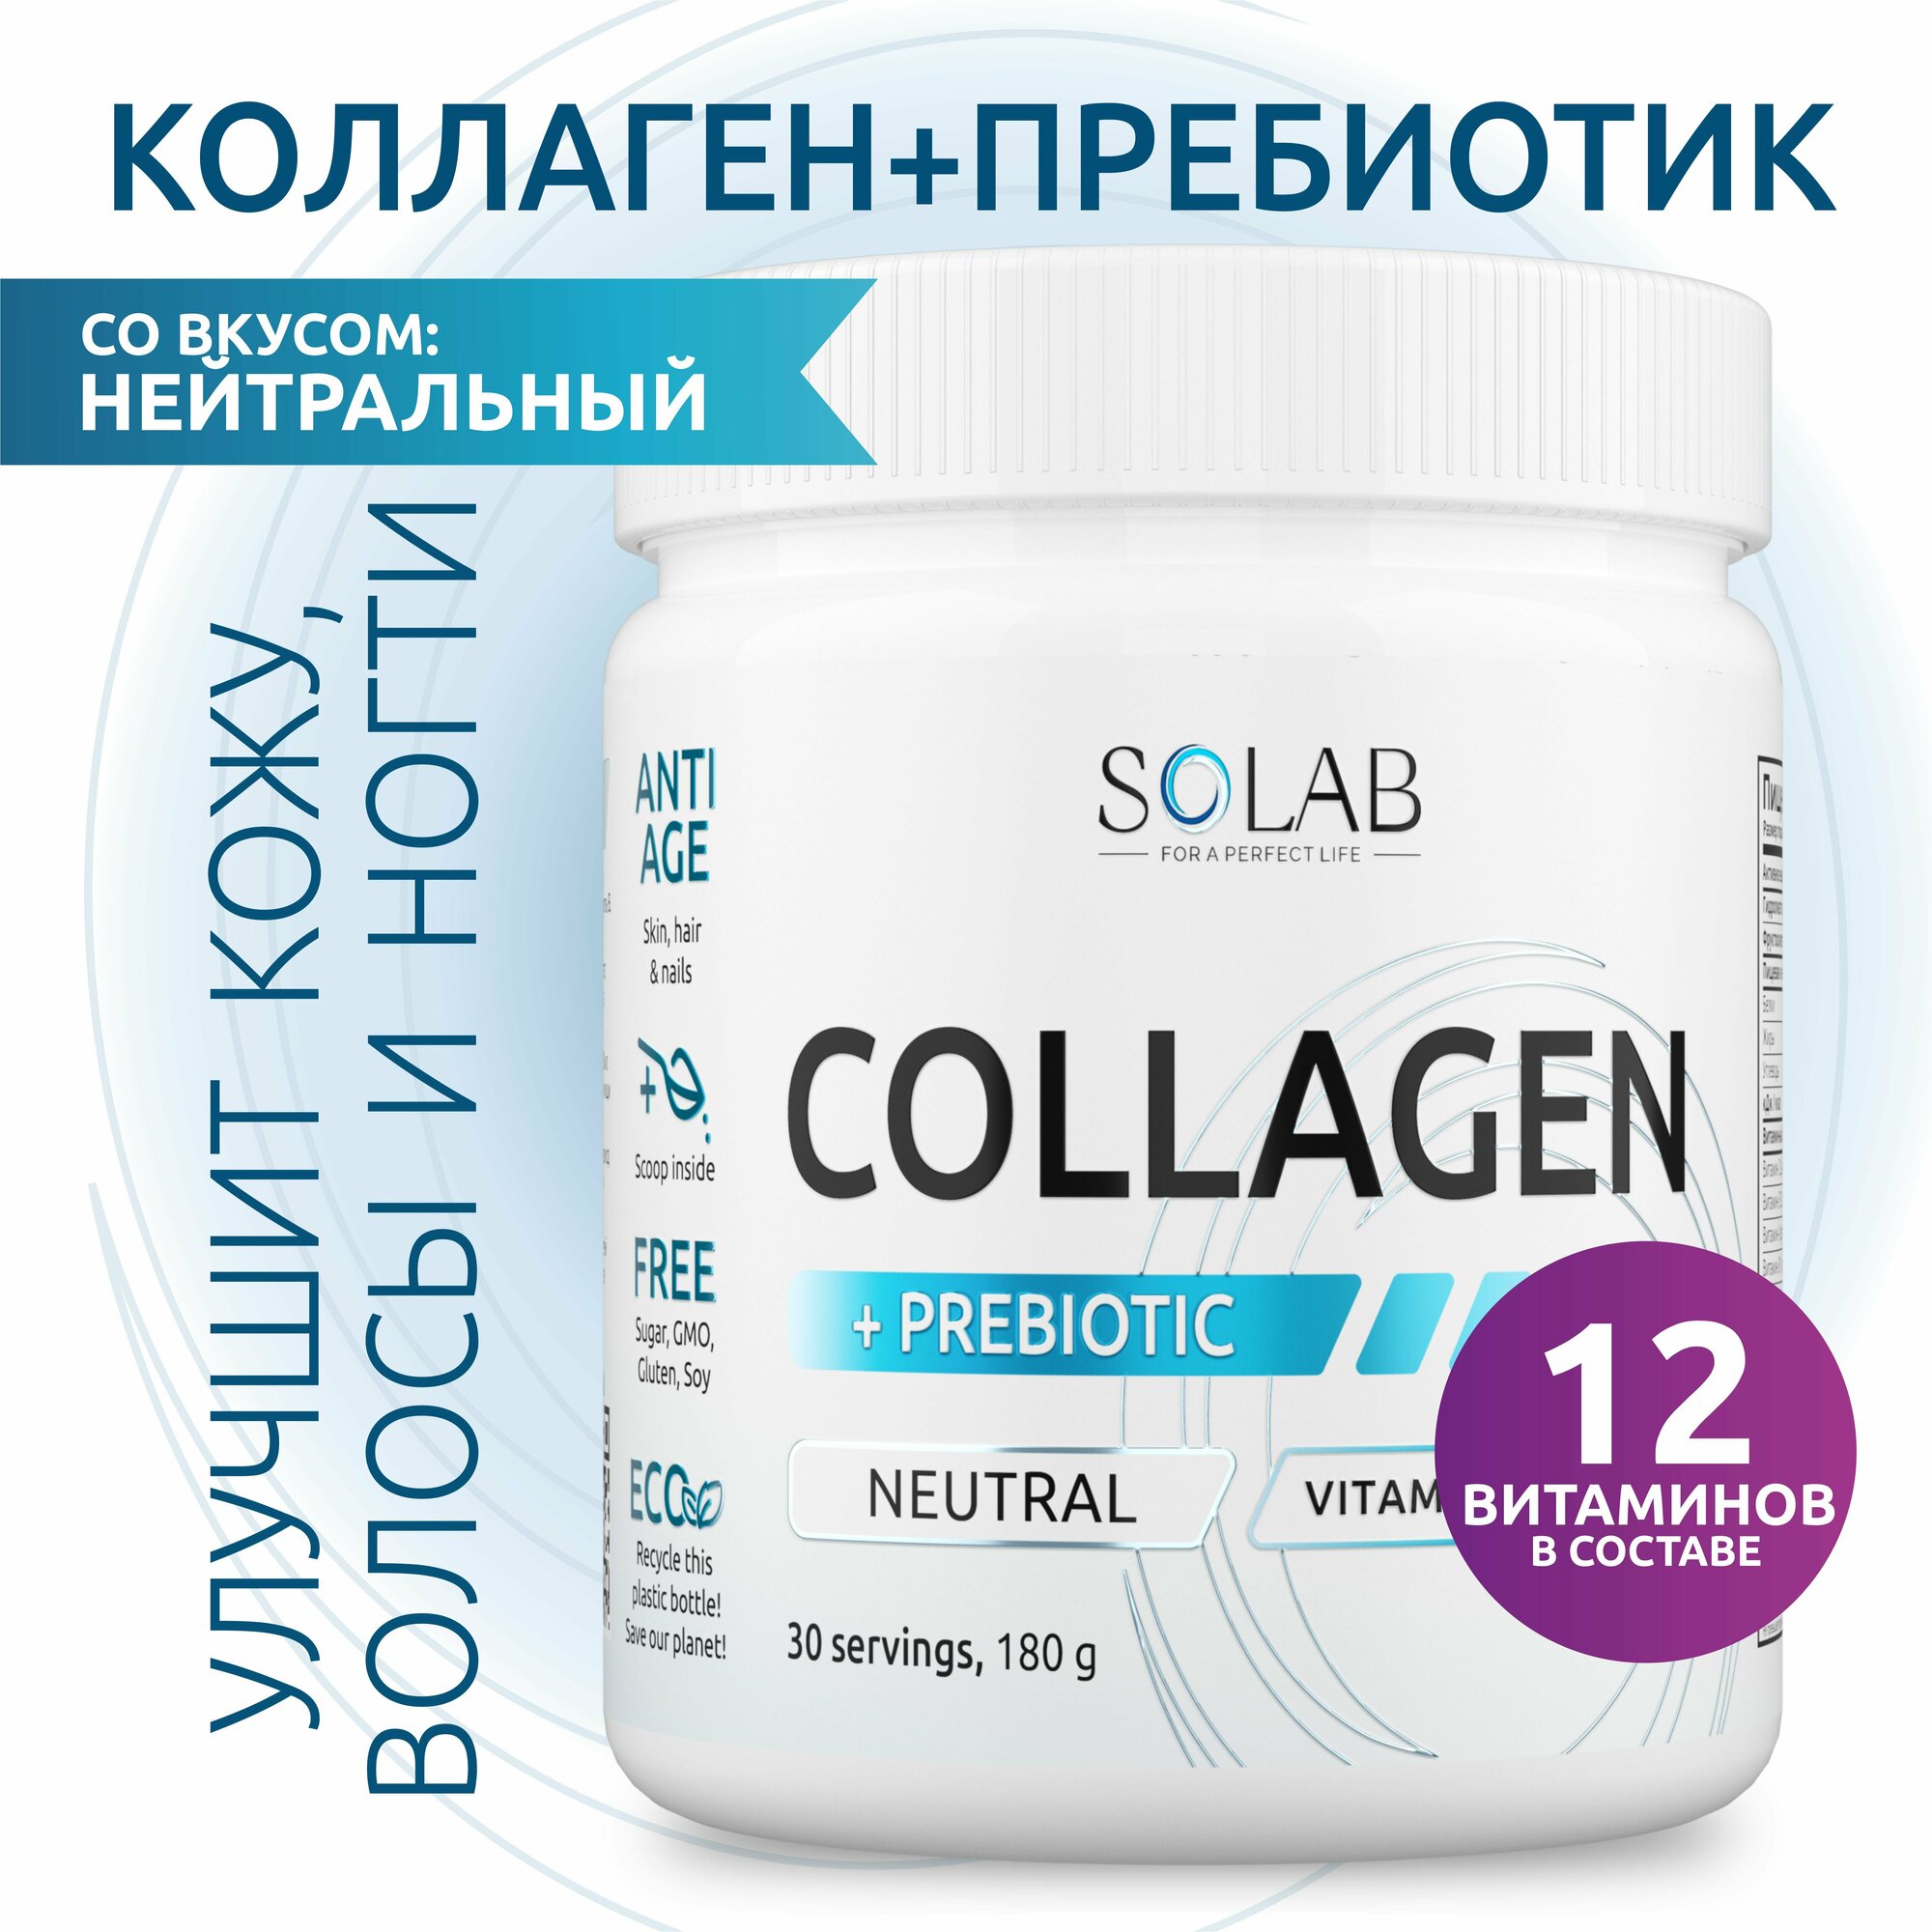 SOLAB Коллаген порошок с пребиотиком, для суставов и связок, нейтральный, 30 порций